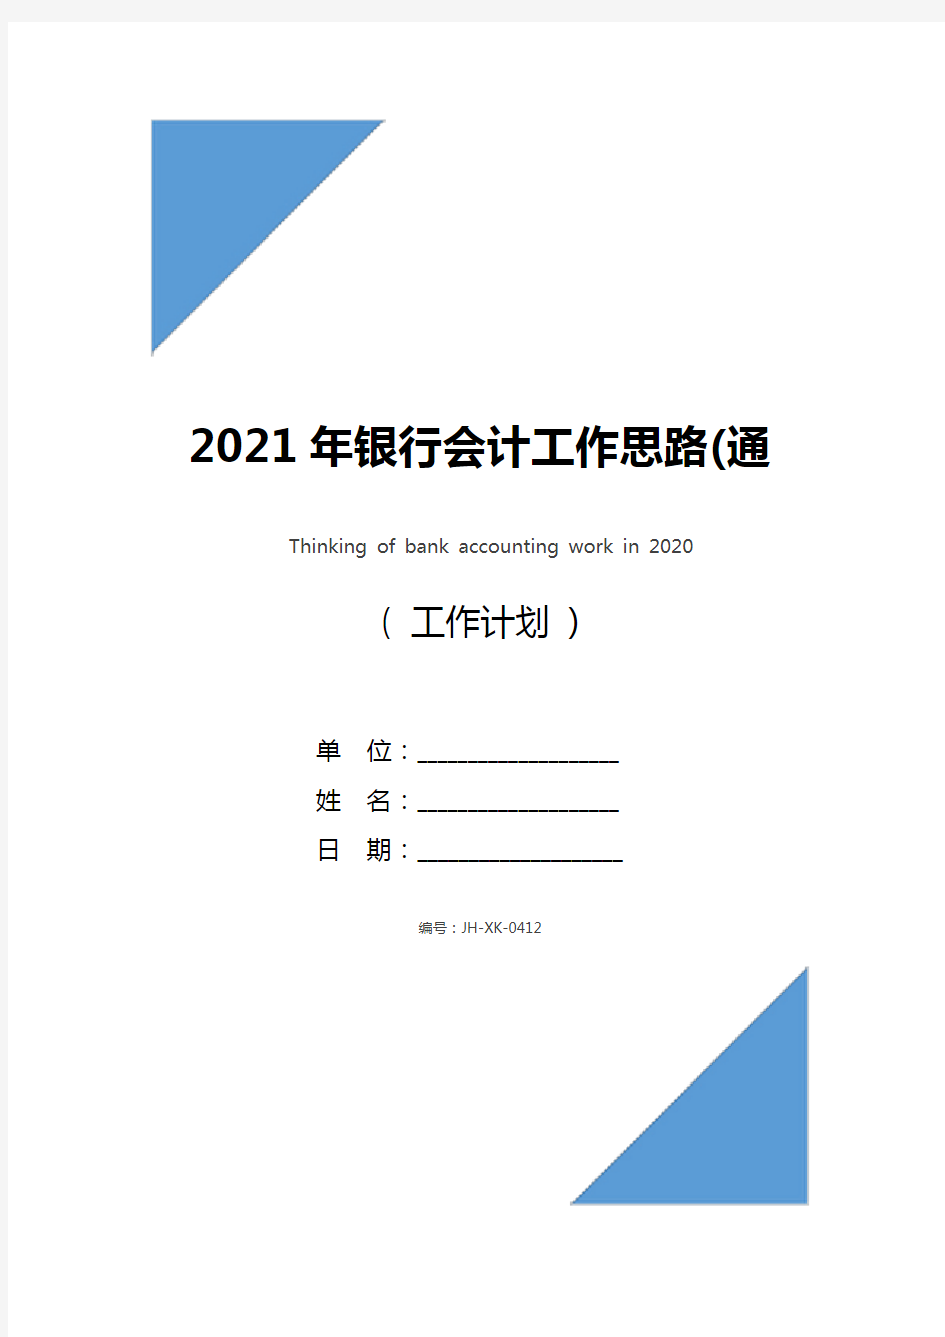 2021年银行会计工作思路(通用版)